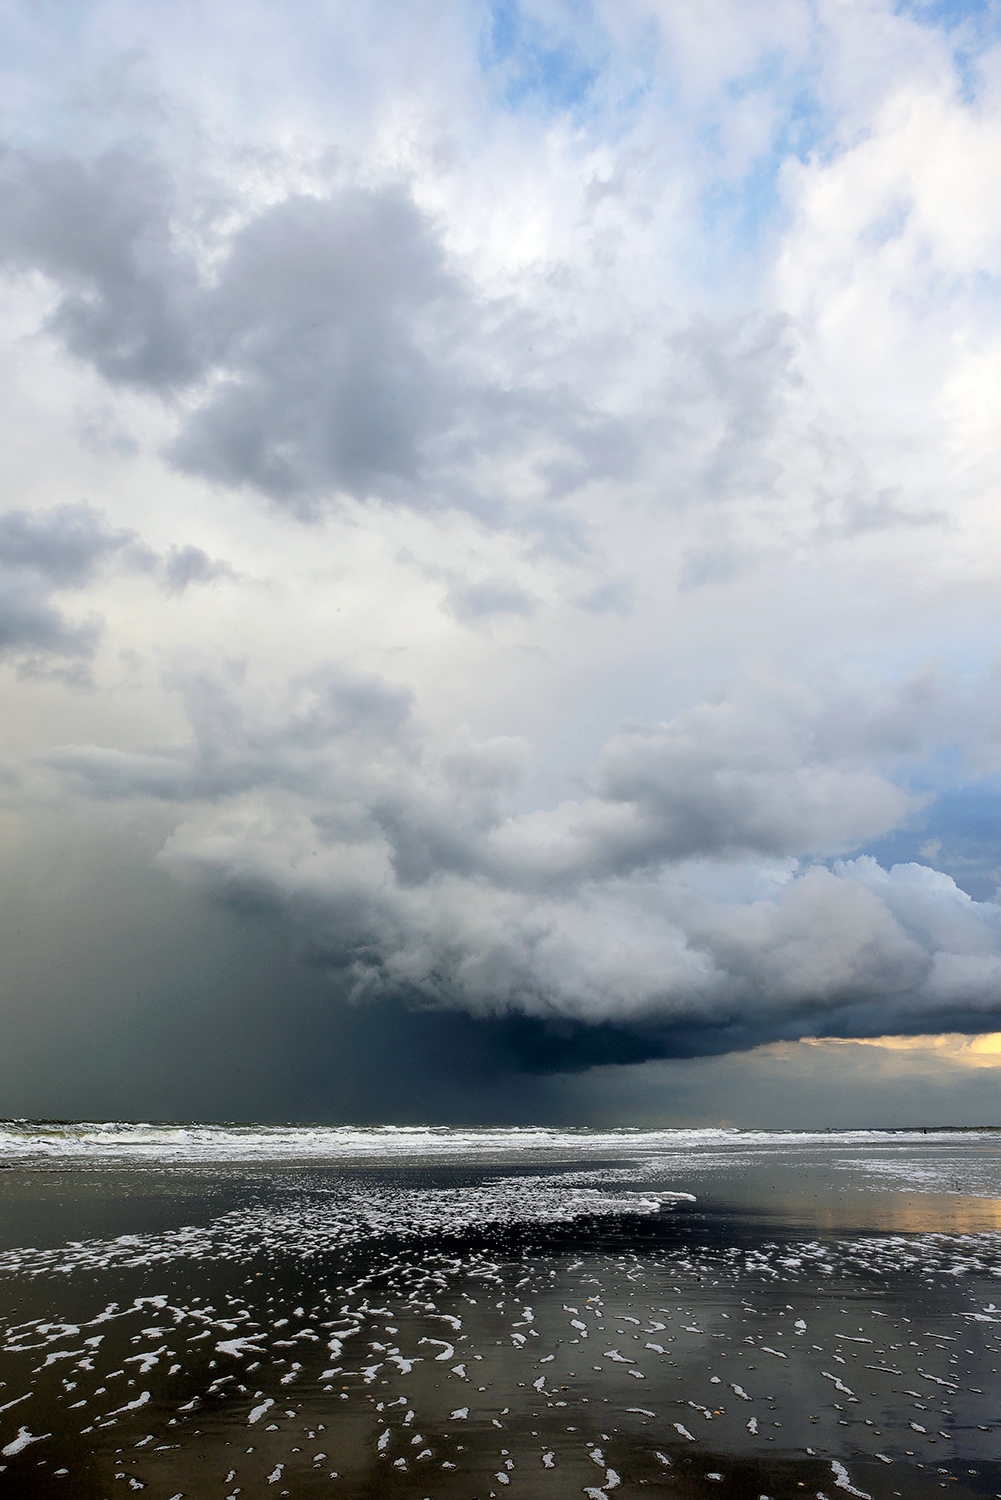 Donkere, dreigende wolkenlucht van naderende hagelbui boven zee tijdens storm op het strand van Wijk aan Zee